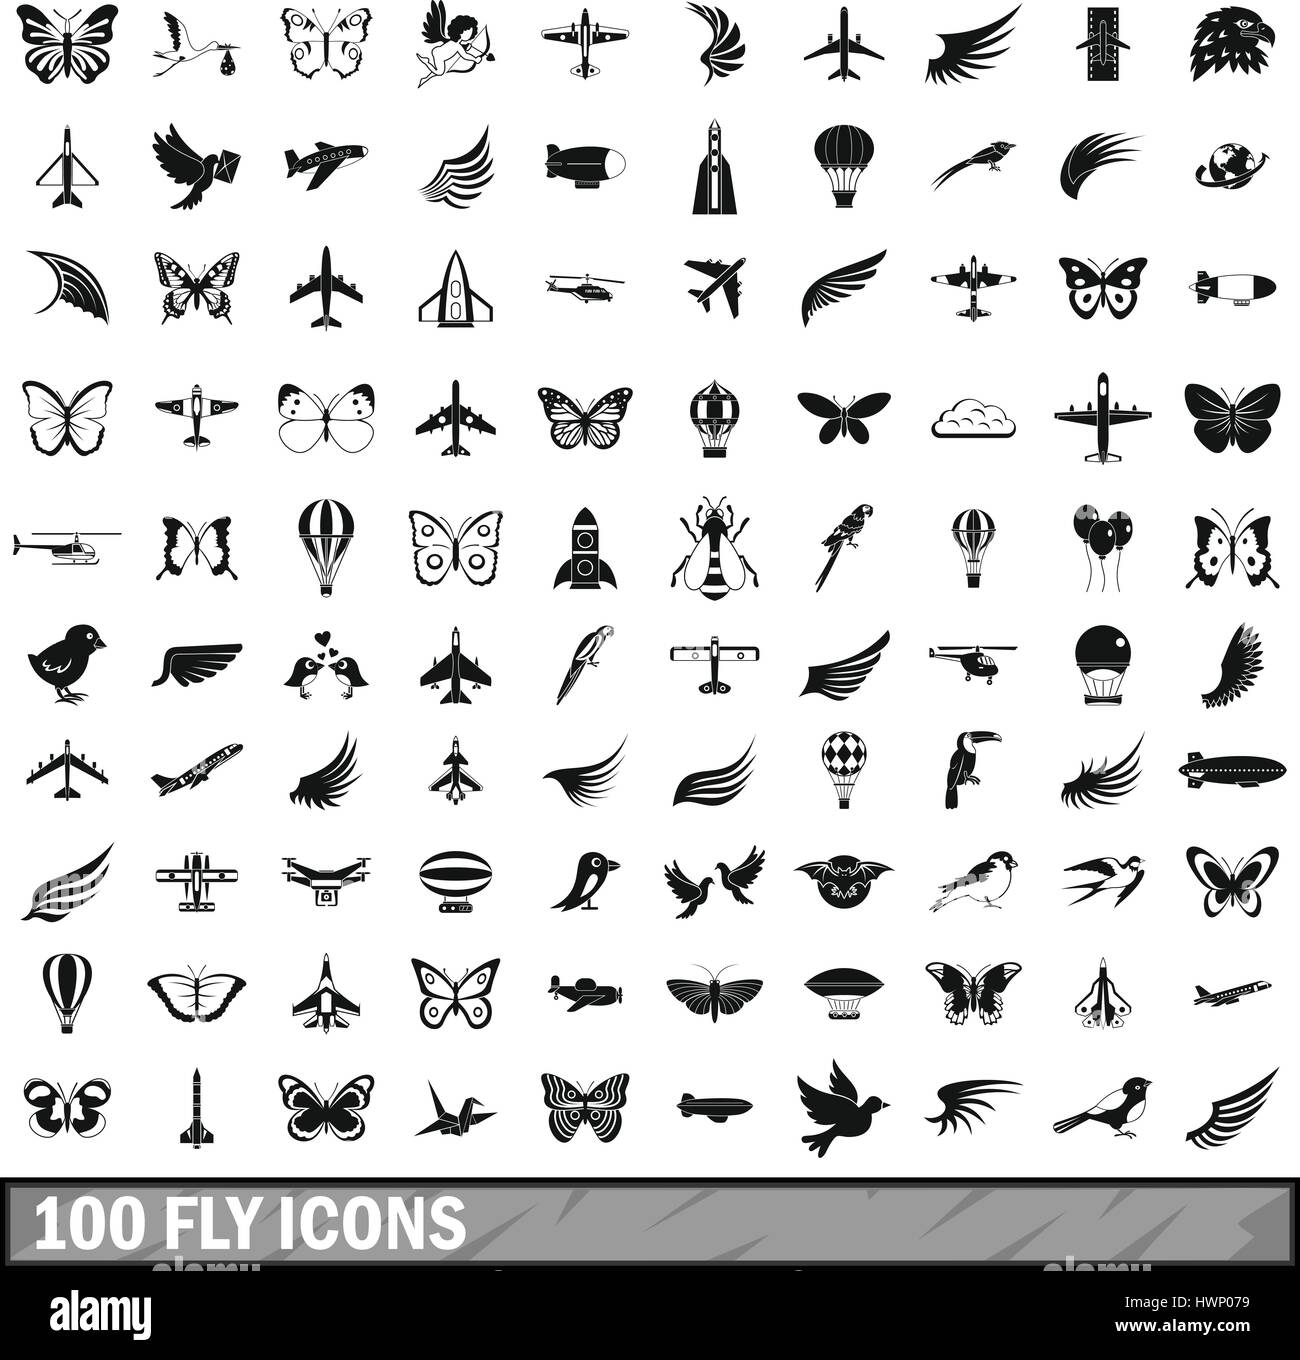 100 fliegen Icons Set, einfachen Stil Stock Vektor